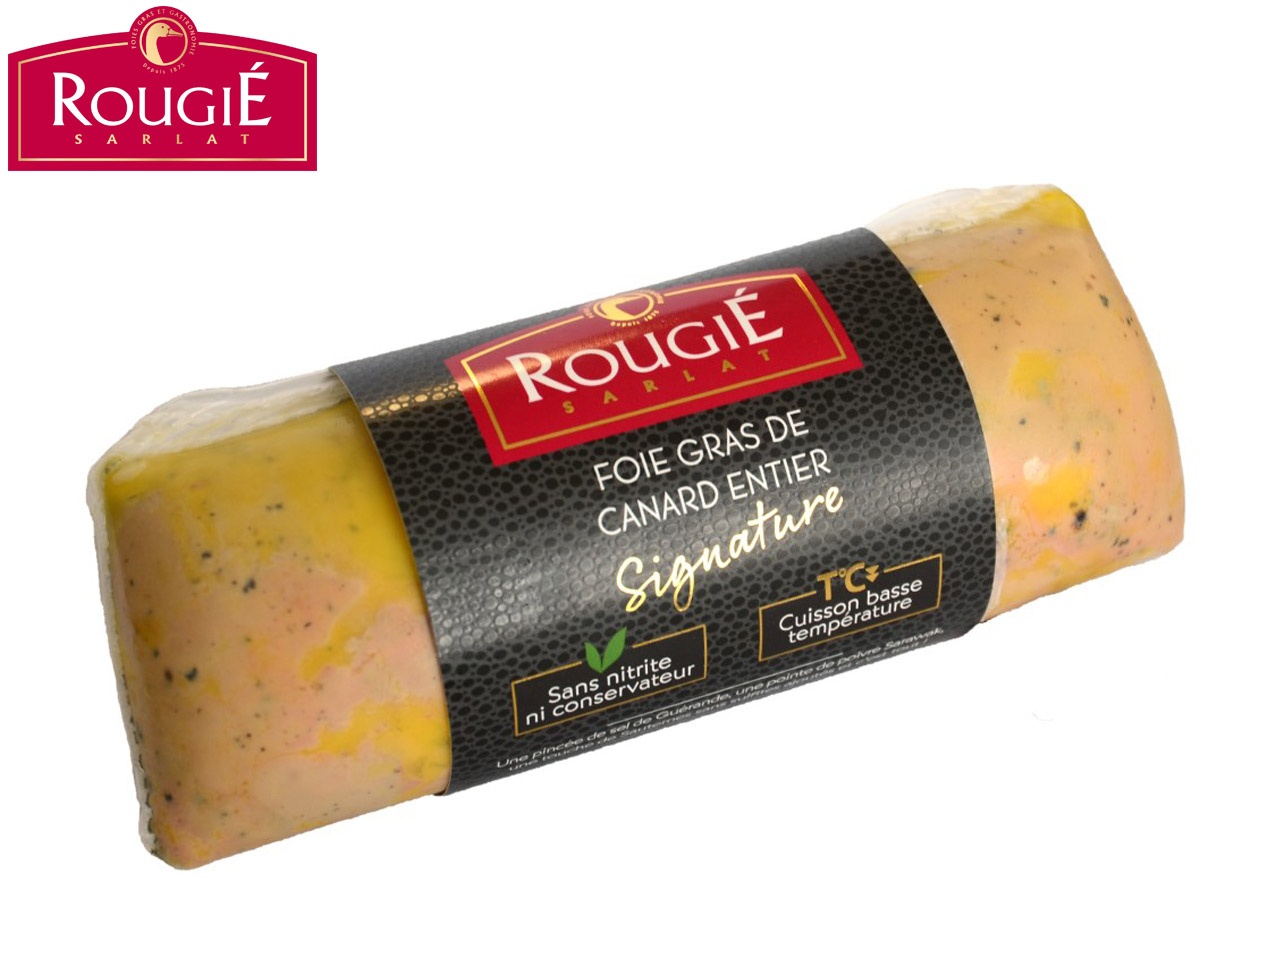 Rougié lance un foie gras avec une recette clean label